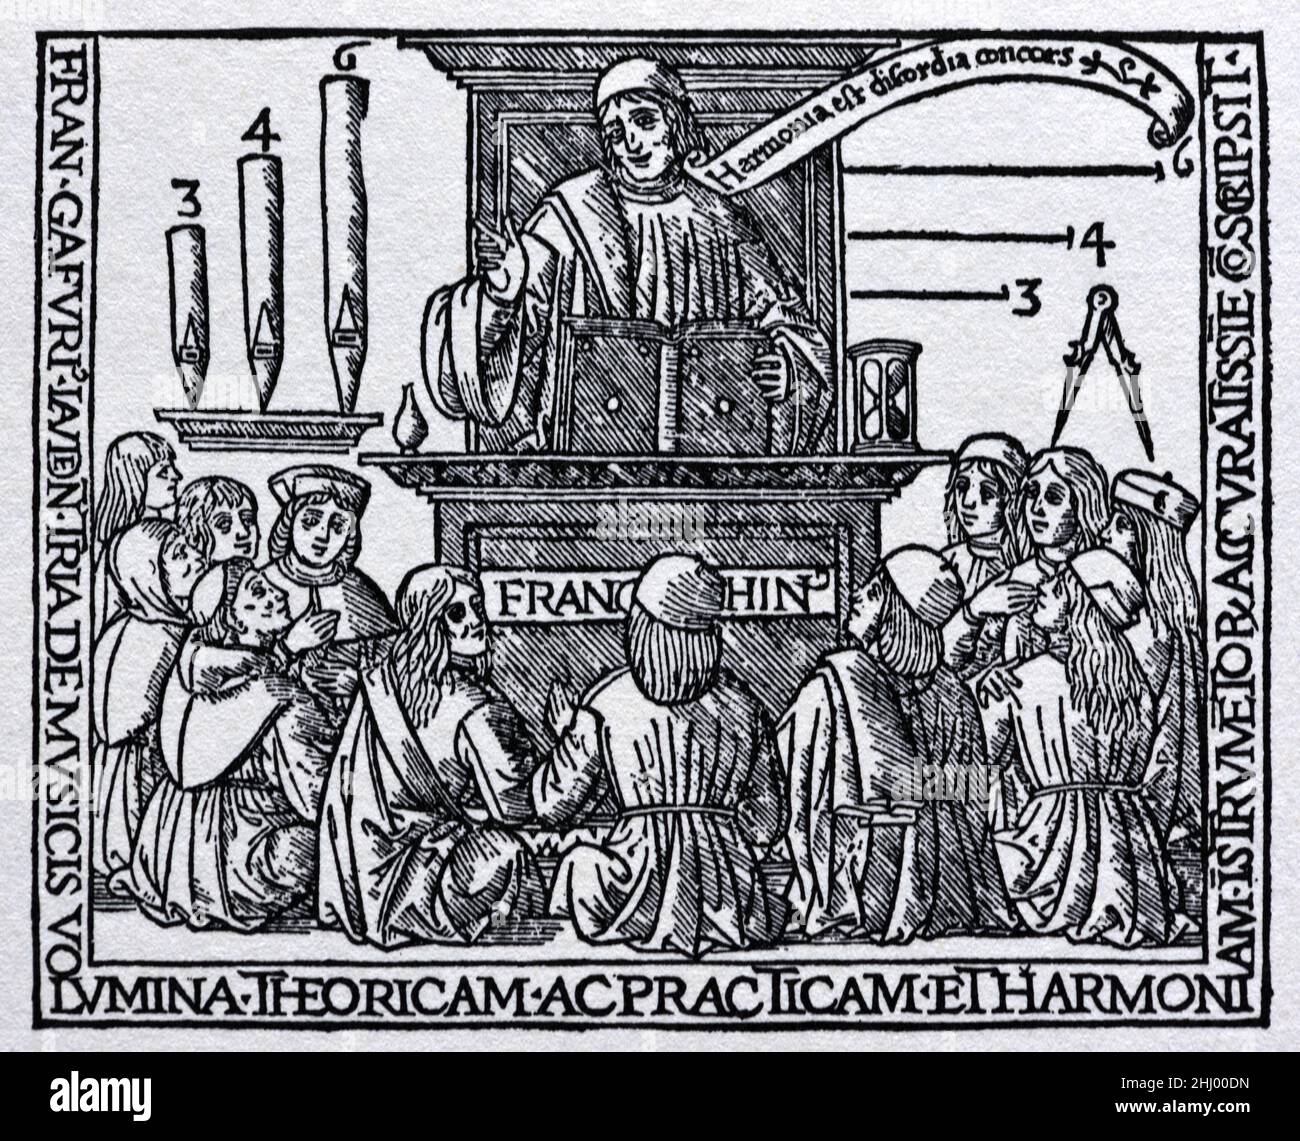 Franchinus Gaffurius (1451-1522) aka Franchino Gaffurio, italienischer Musiker und Komponist, der während der Renaissance in Italien Studenten unterstellte. 1518 Holzschnitt, Gravur oder Illustration. Stockfoto